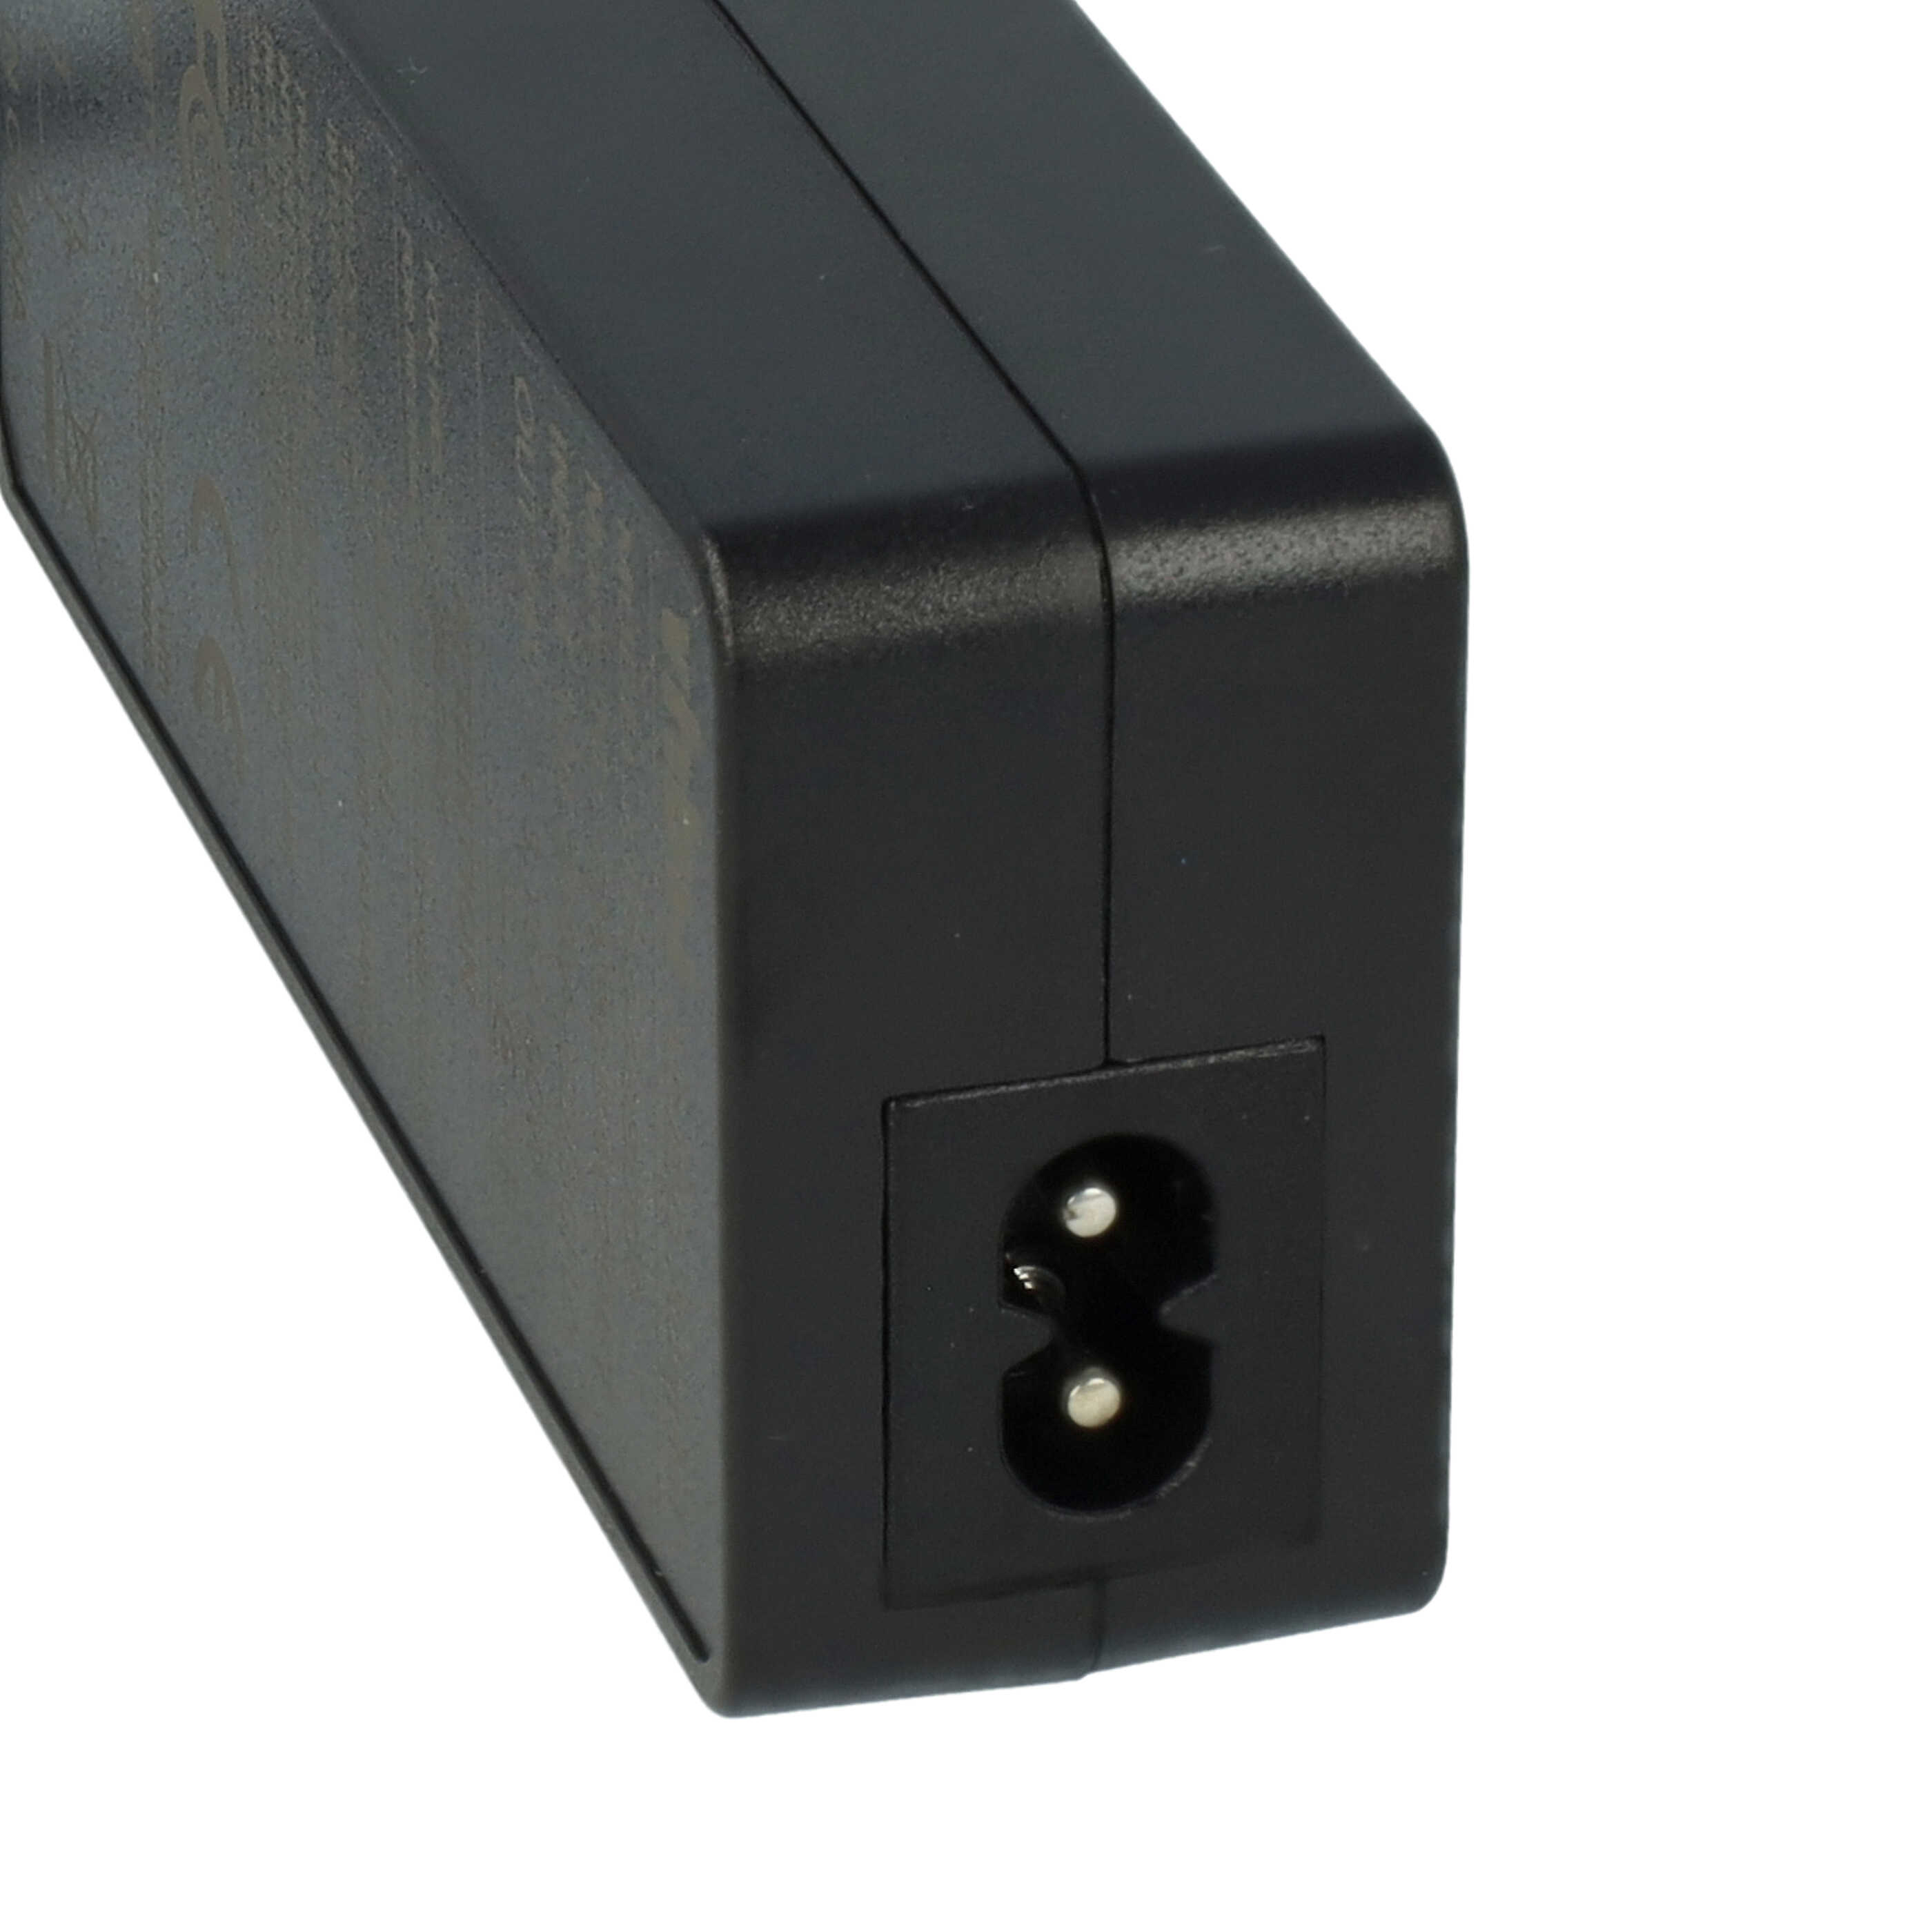 Netzteil als Ersatz für Zebra FSP060-RPAC, P1076000-004 für Zebra Drucker, Etikettendrucker - 230 cm